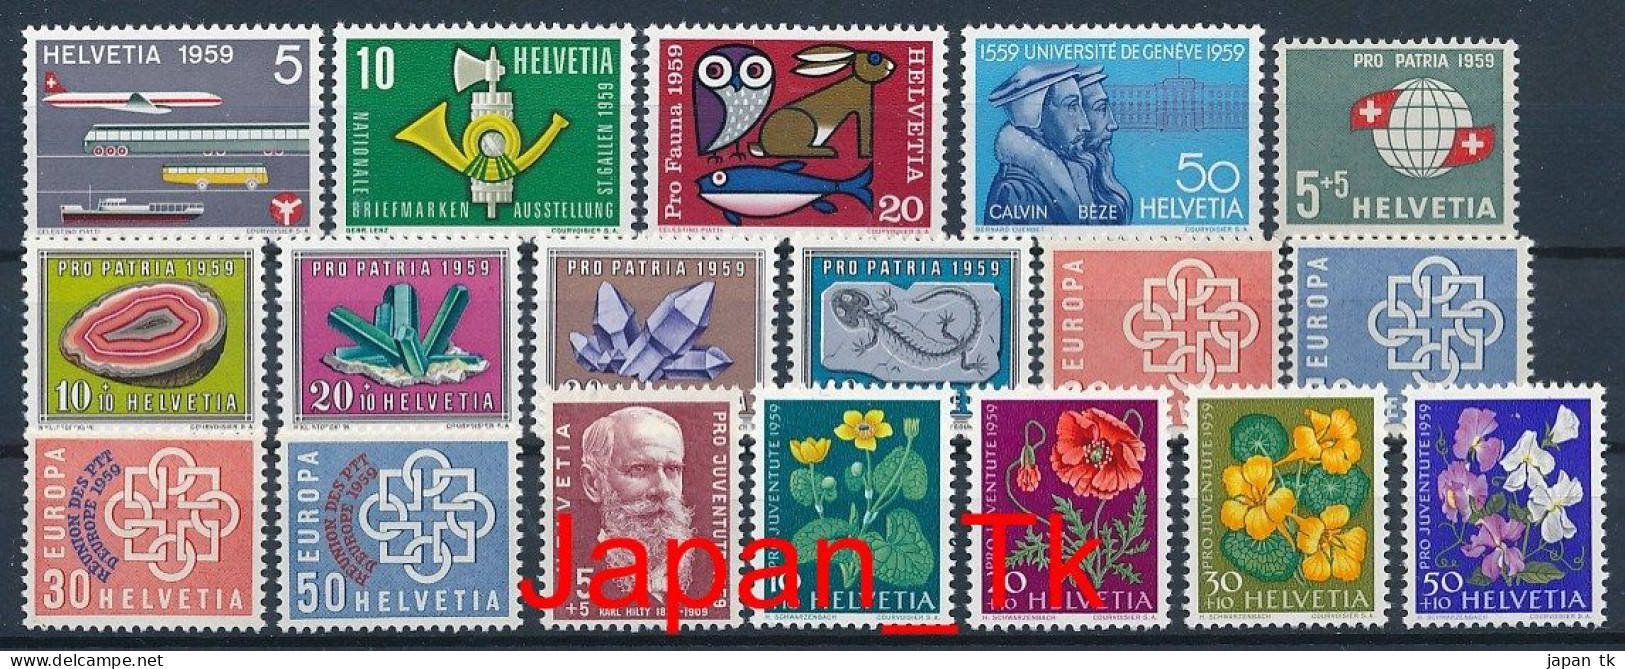 SCHWEIZ Mi. Nr. Marken Aus Jahrgang 1959  - Siehe Scan - MNH - Unused Stamps